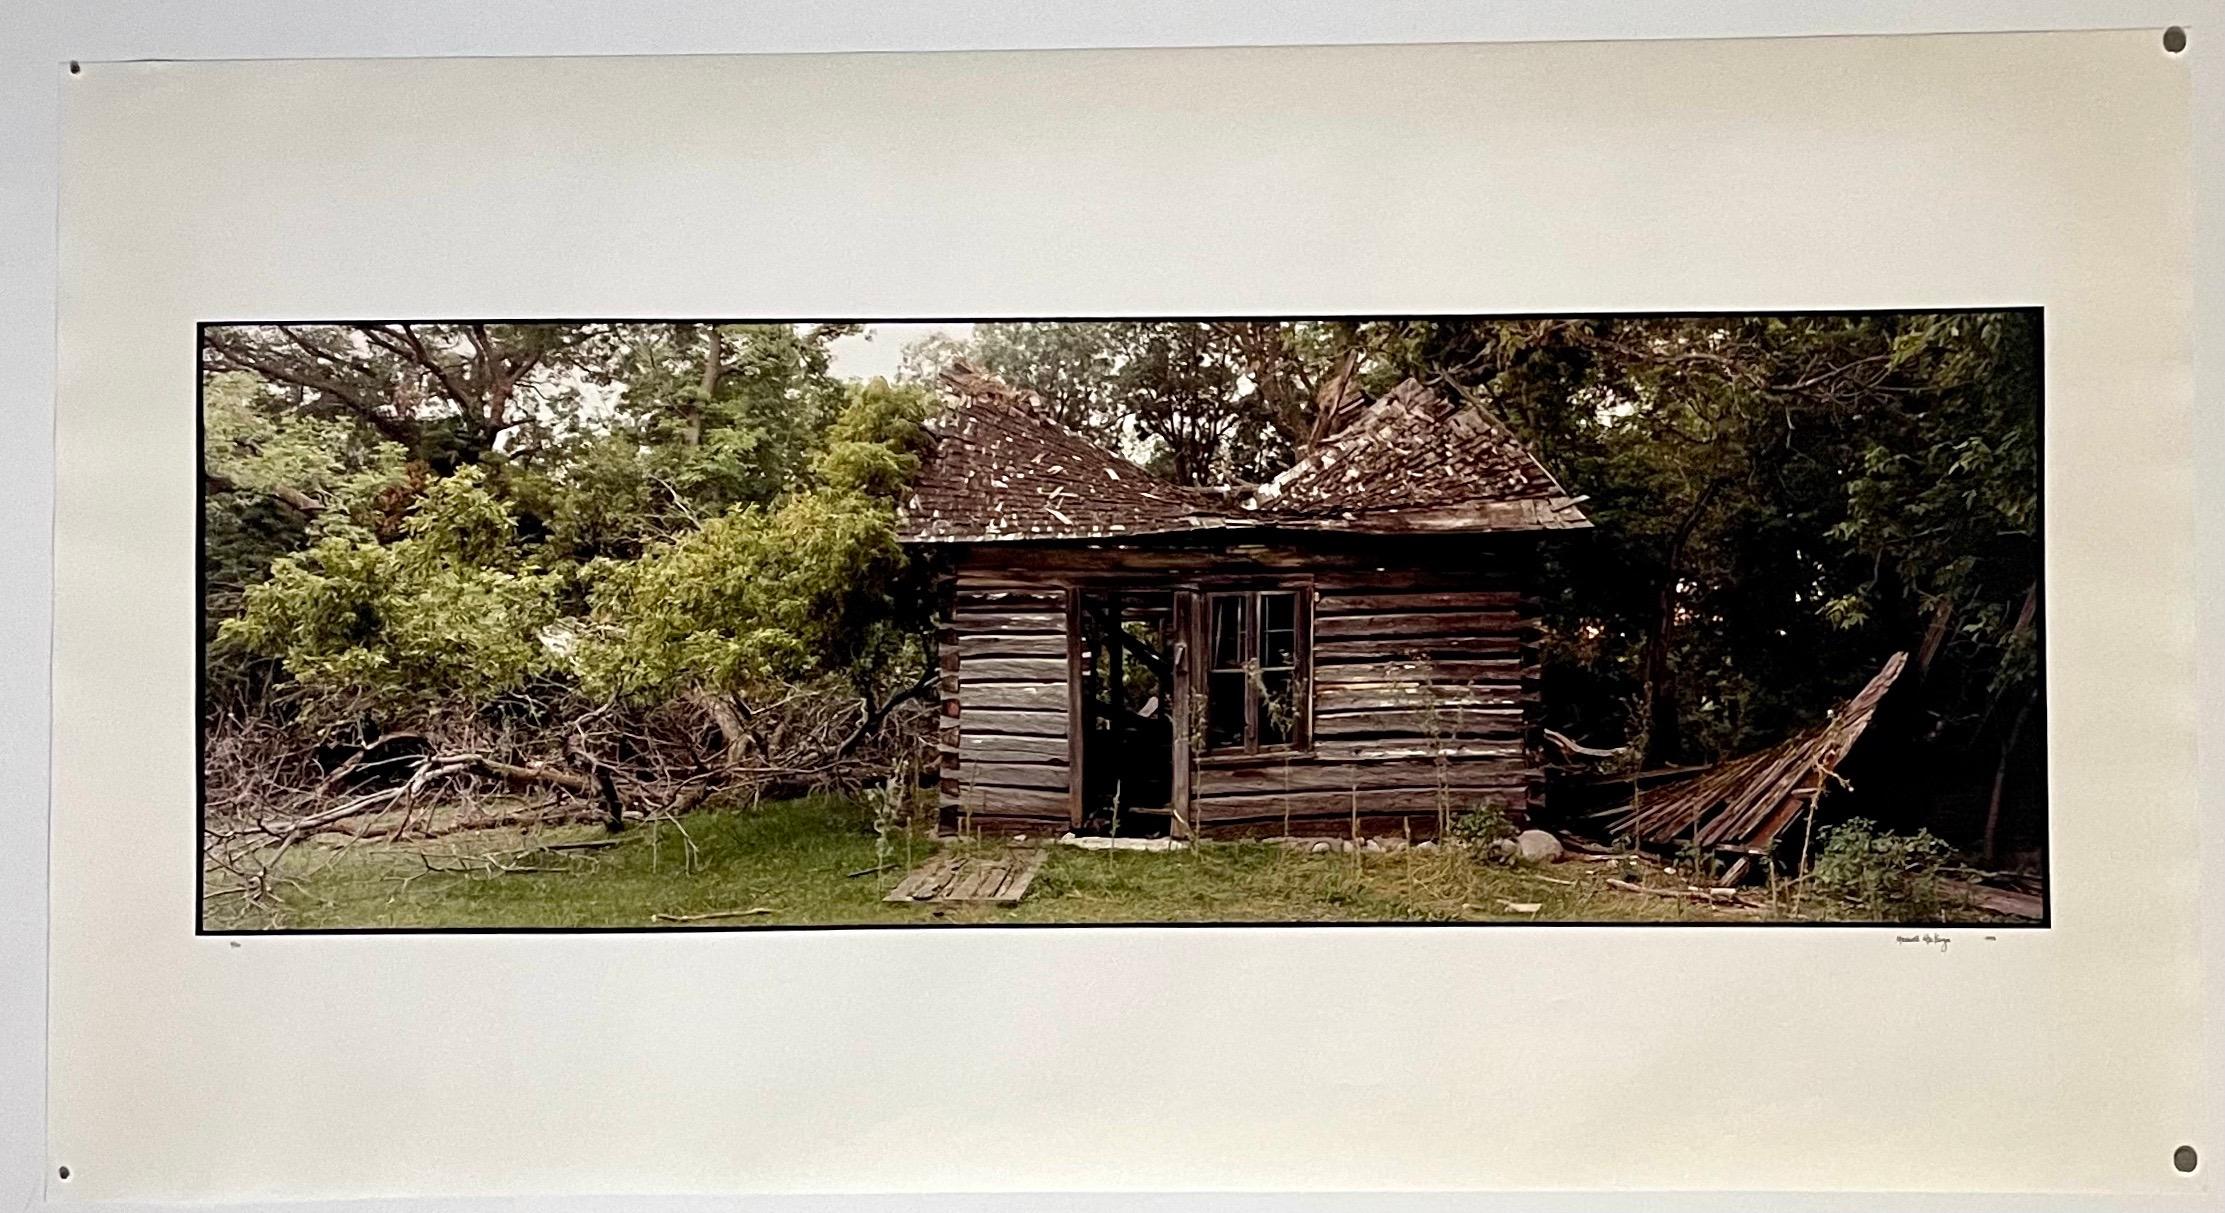 Homestead du canton d'Everts, été 1993
Fabuleuse photographie de paysage américain d'une scène de paysage rural. 
d'une petite édition de 20 exemplaires signés à la main
Tirage chromogène grand format sur papier professionnel Kodak
Les feuilles font